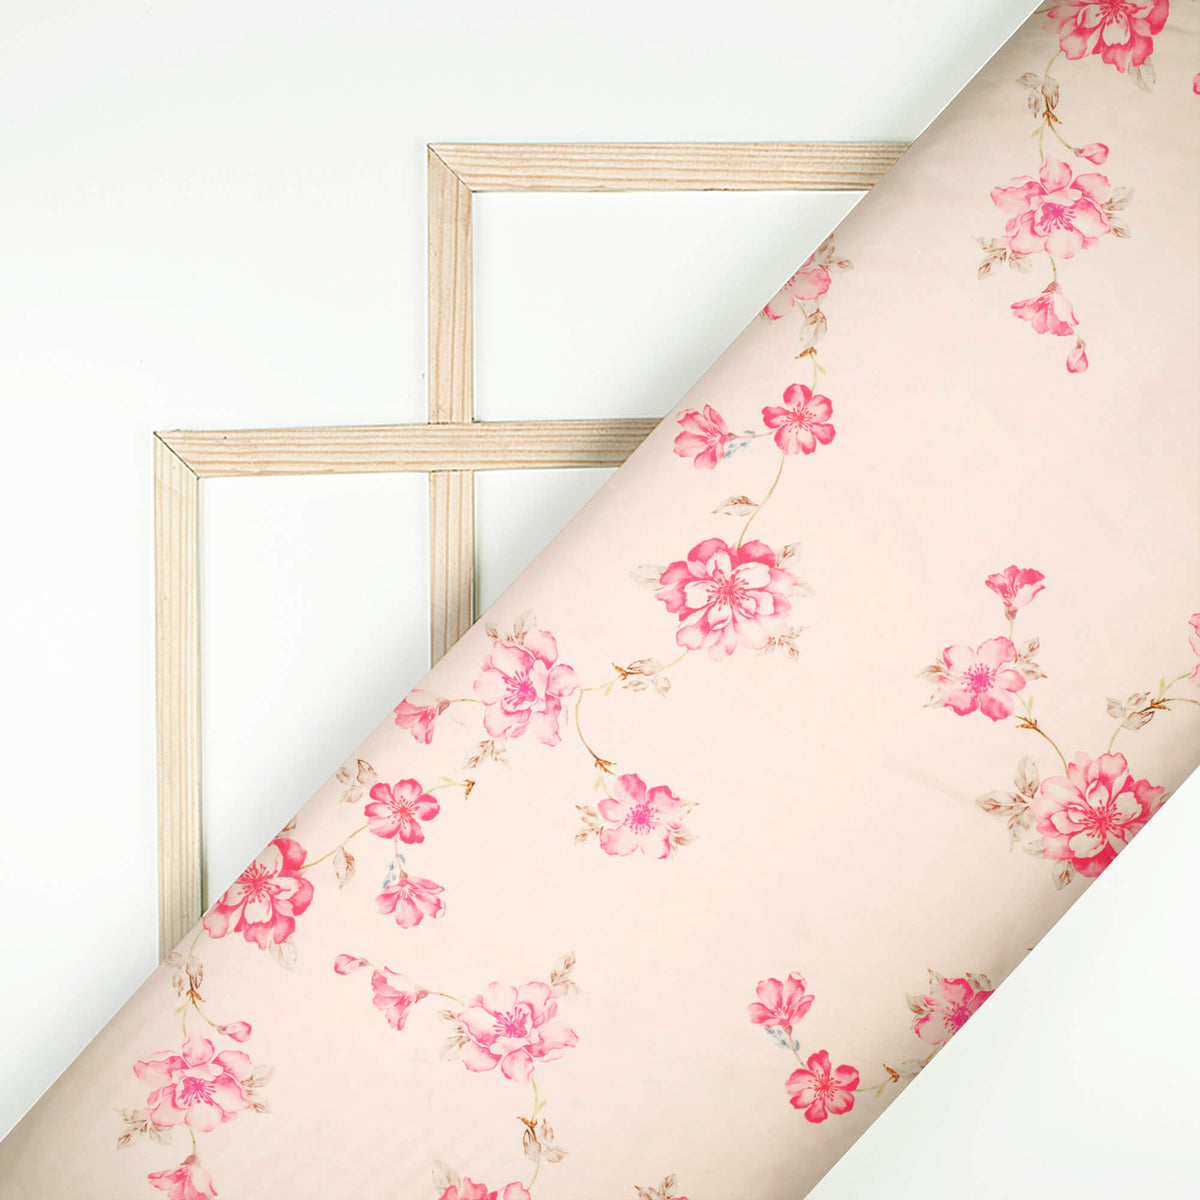 Taffy Pink Floral Pattern Digital Print Organza Satin Fabric